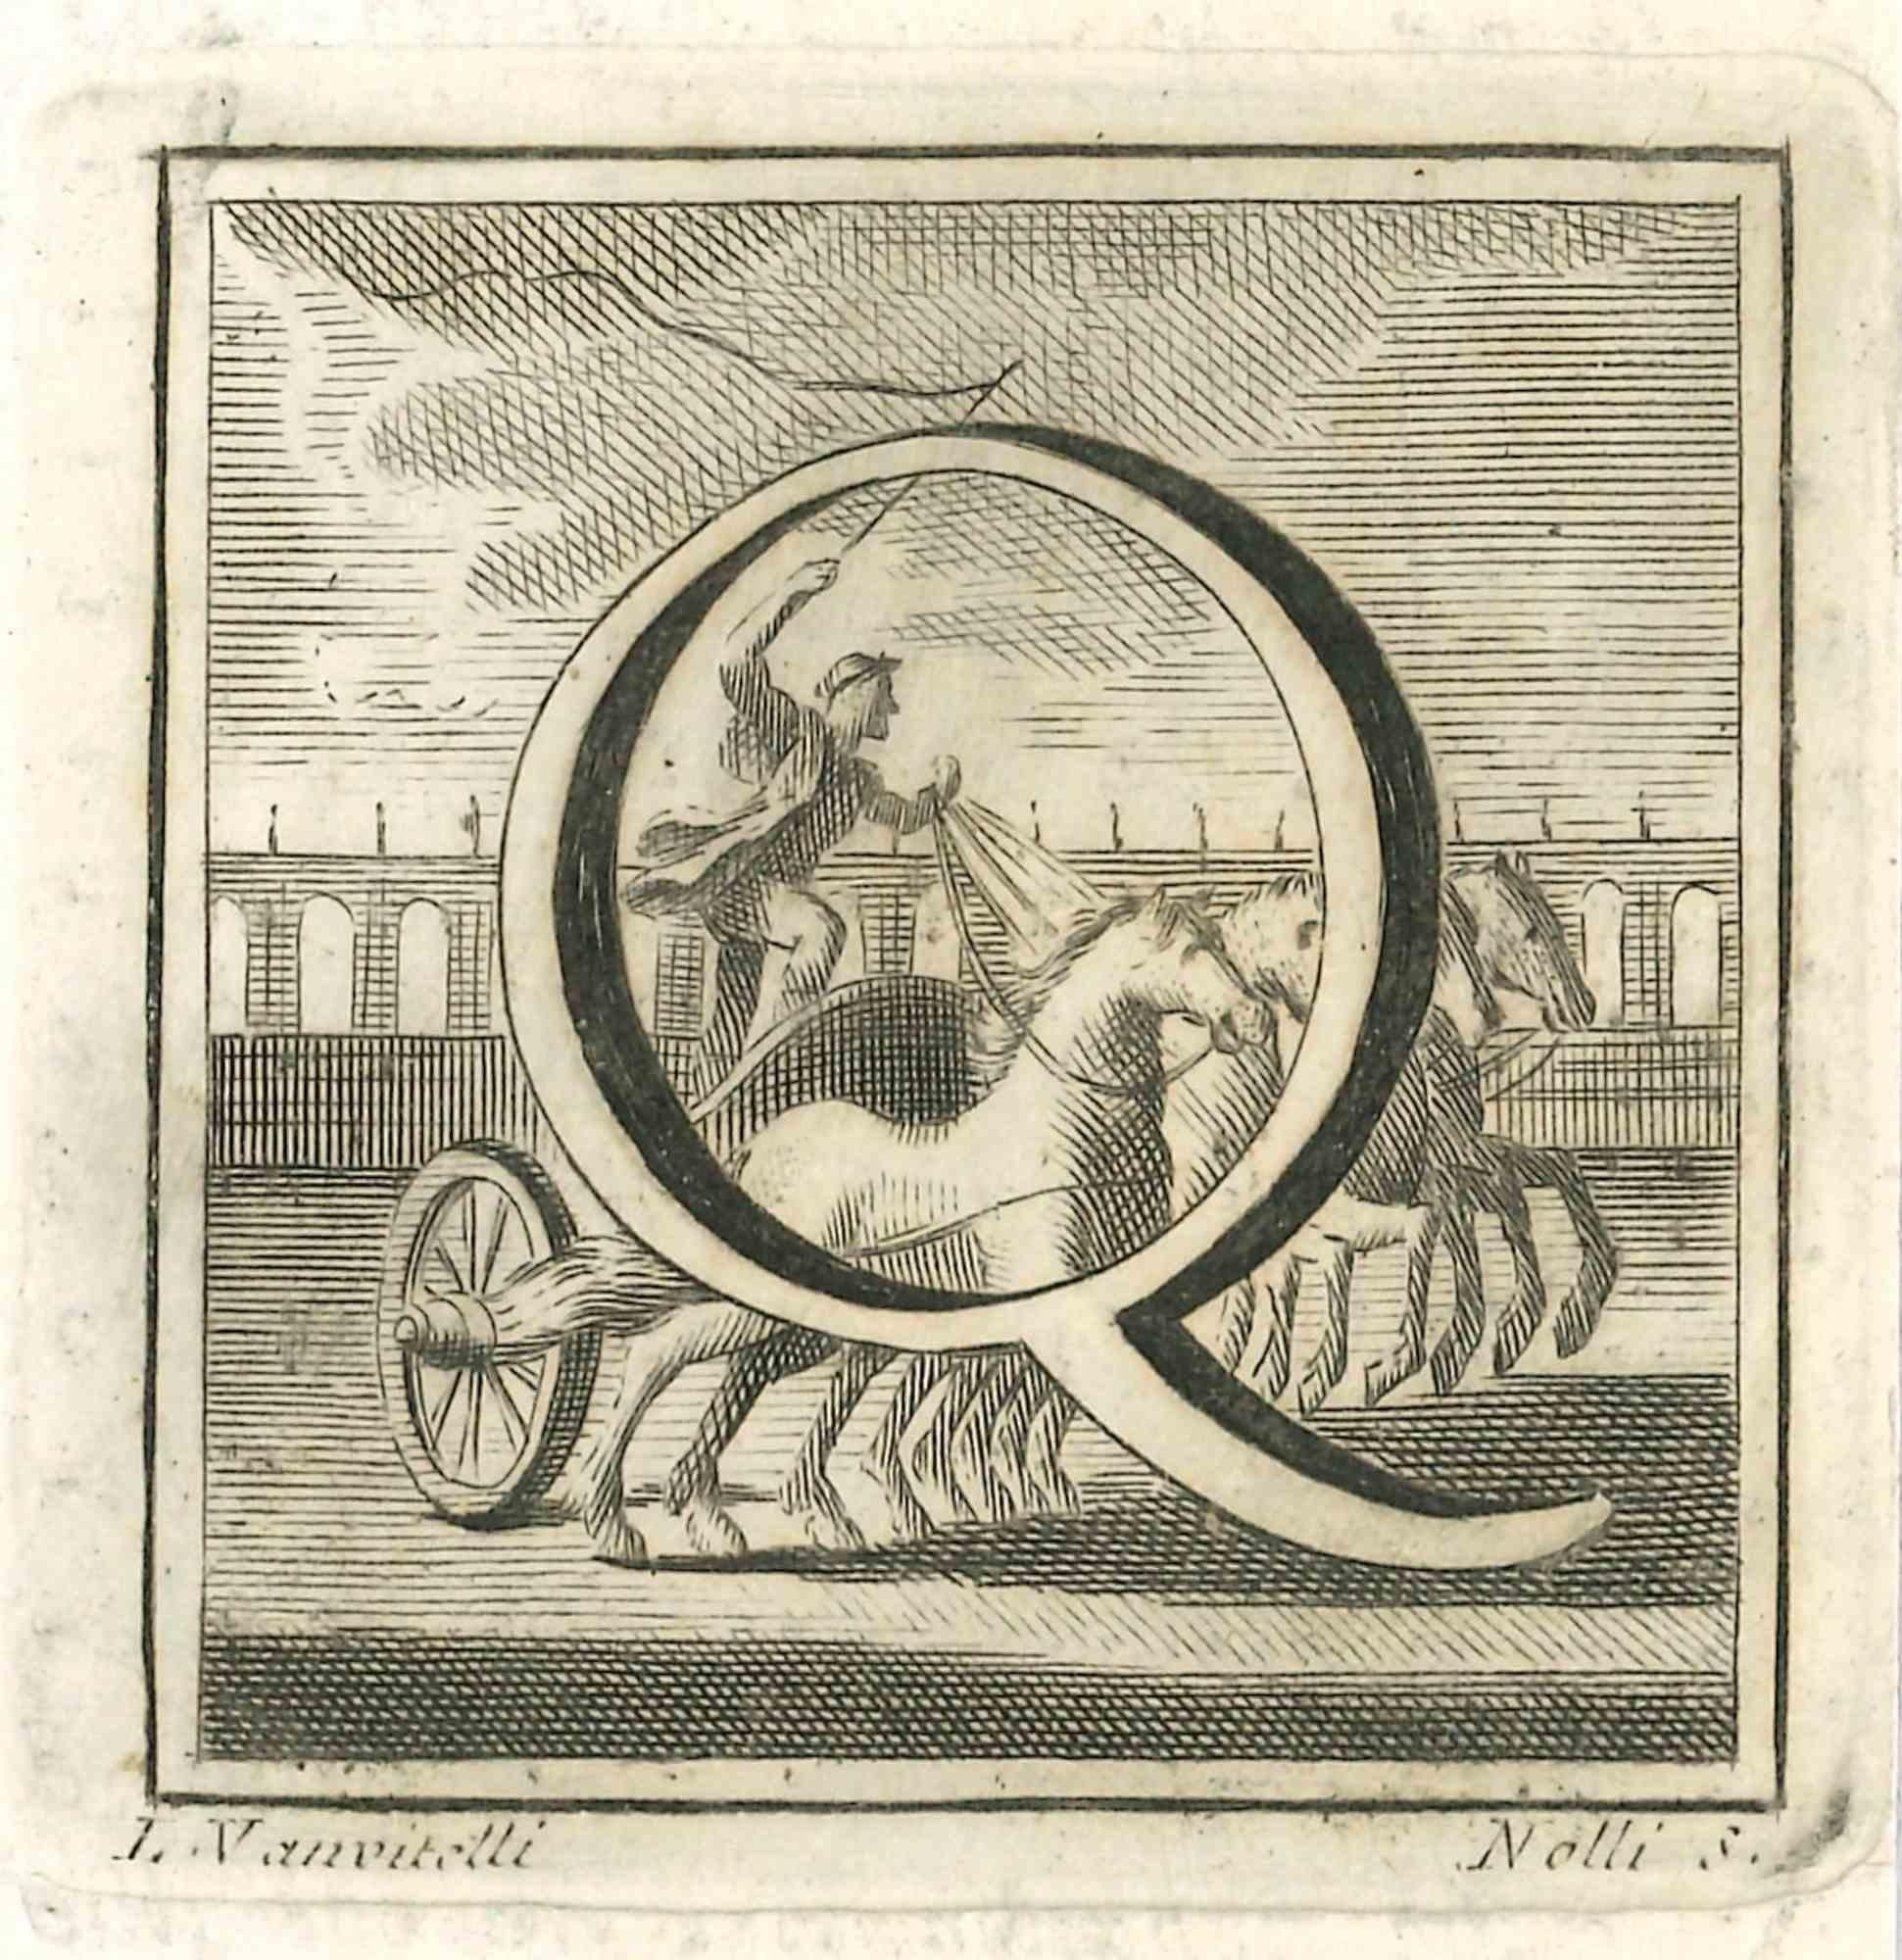 Lettre de l'alphabet Q,  de la série "Antiquités d'Herculanum", est une gravure sur papier réalisée par Luigi Vanvitelli au 18ème siècle.

Bon état avec quelques pliures.

La gravure appartient à la suite d'estampes "Antiquités d'Herculanum